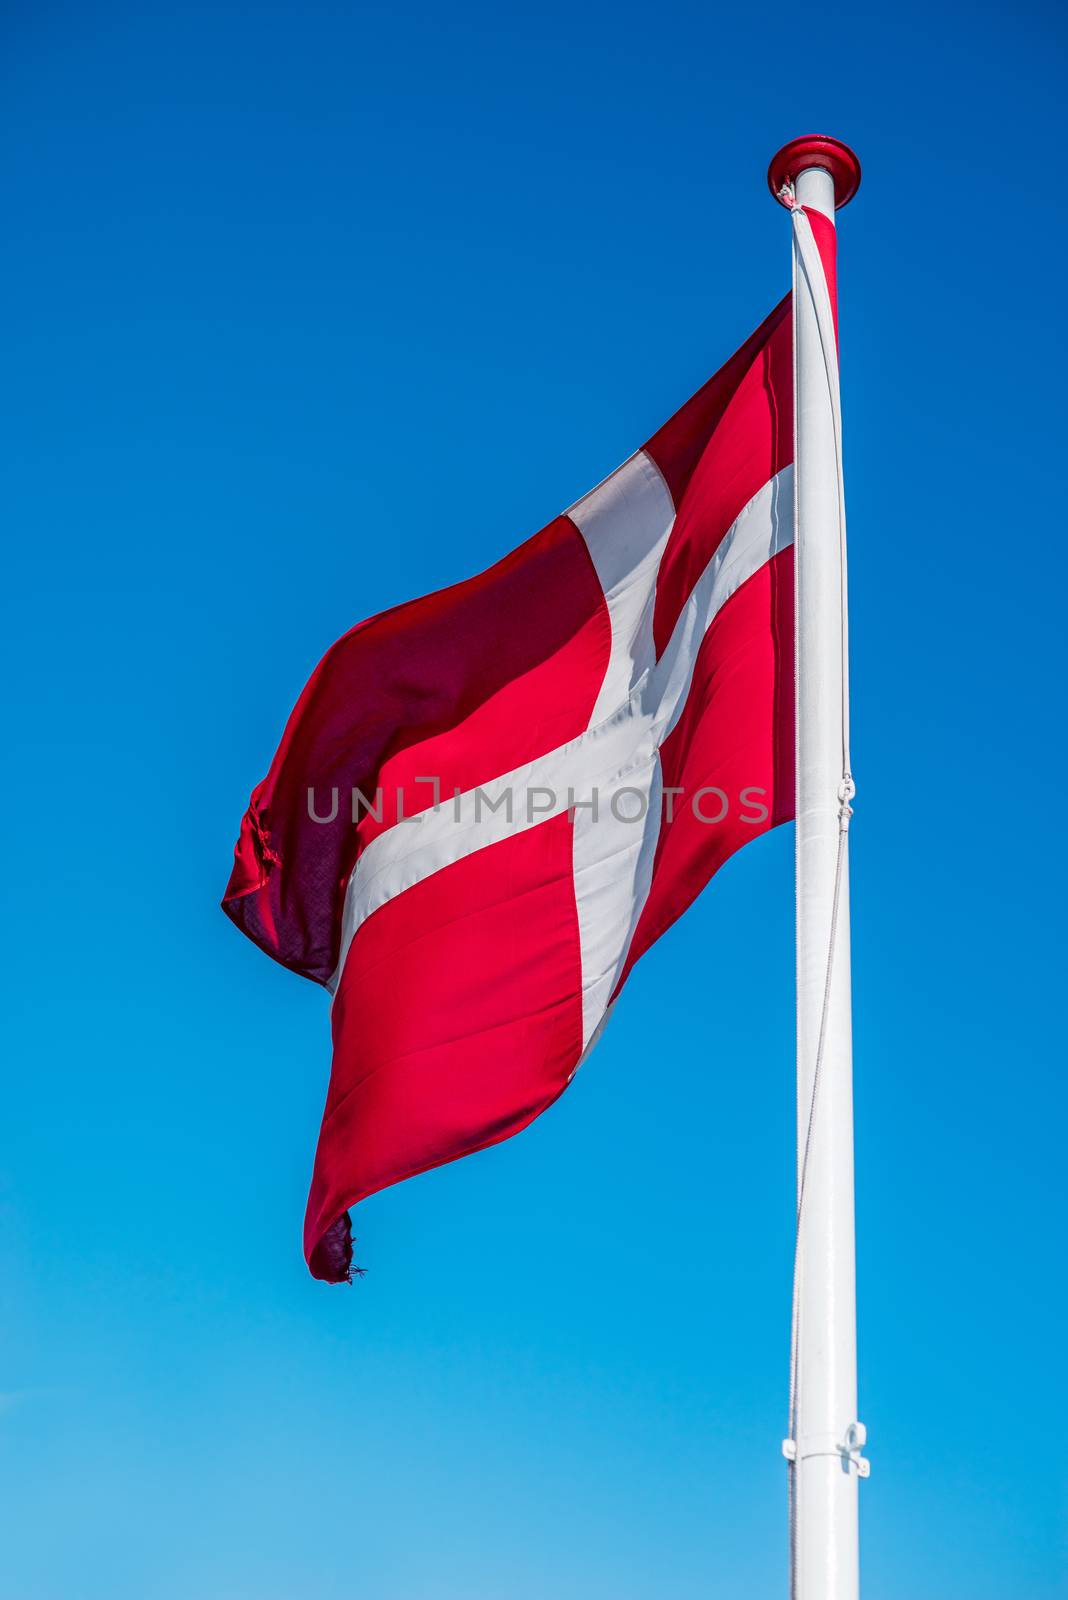 Denmark flag on a pole in blue sky